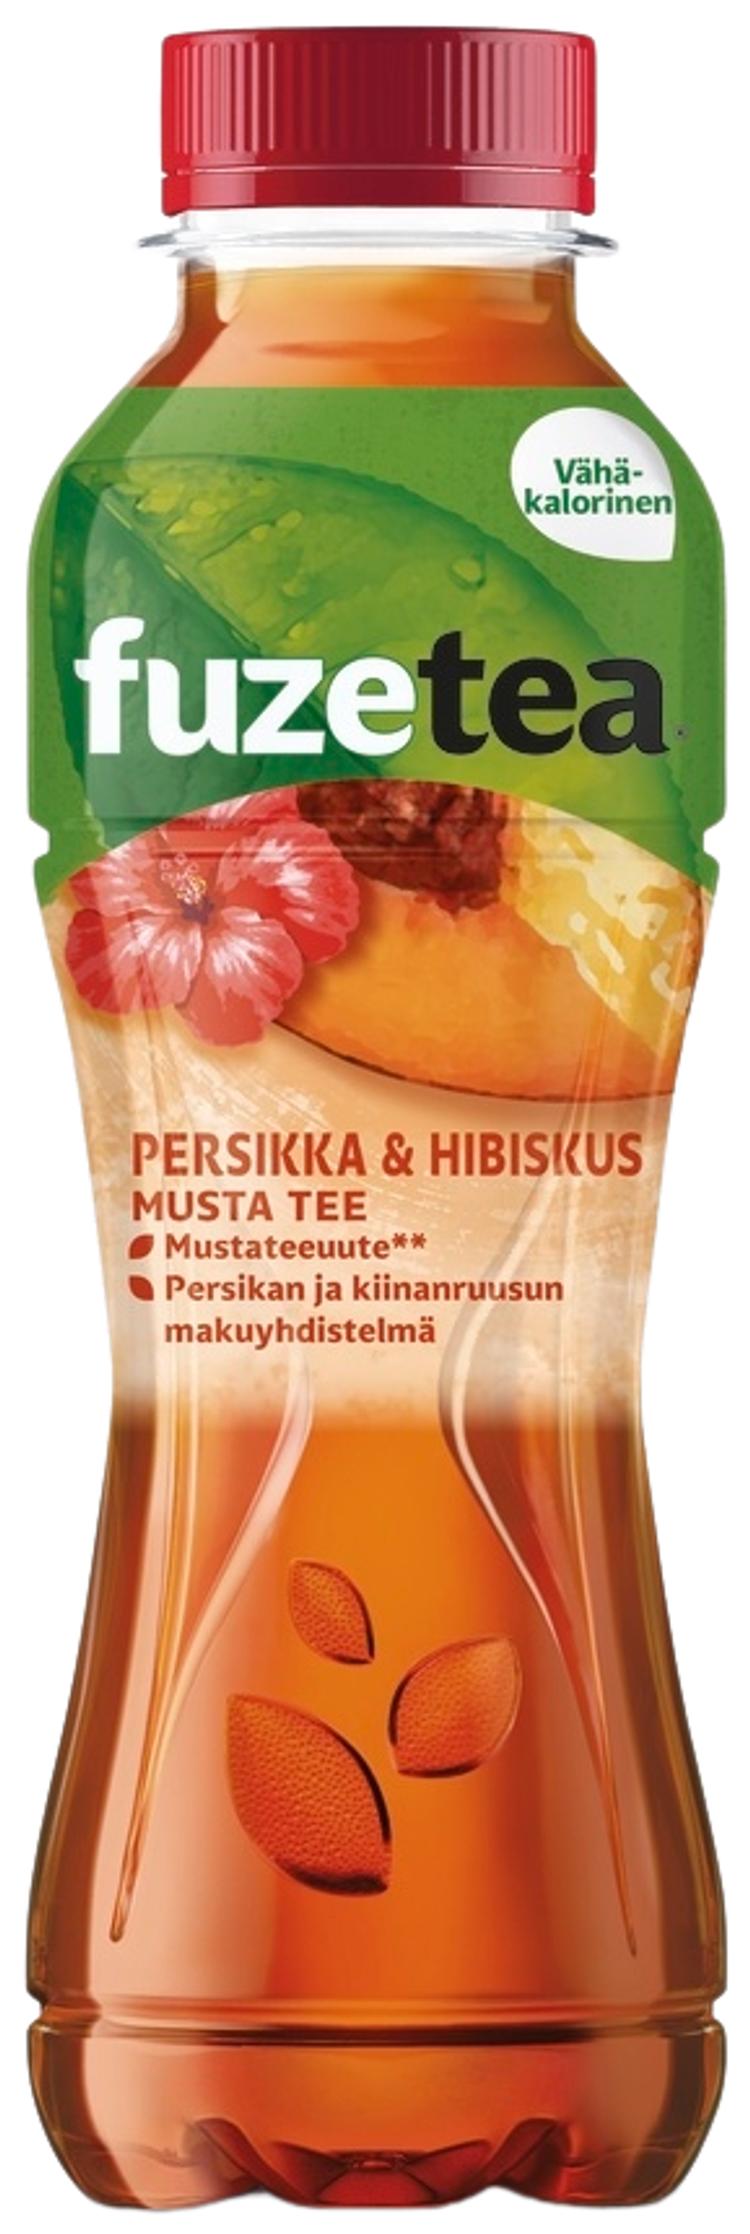 Fuze Tea Persikka&Hibiskus teejuoma muovipullo 0,4 L